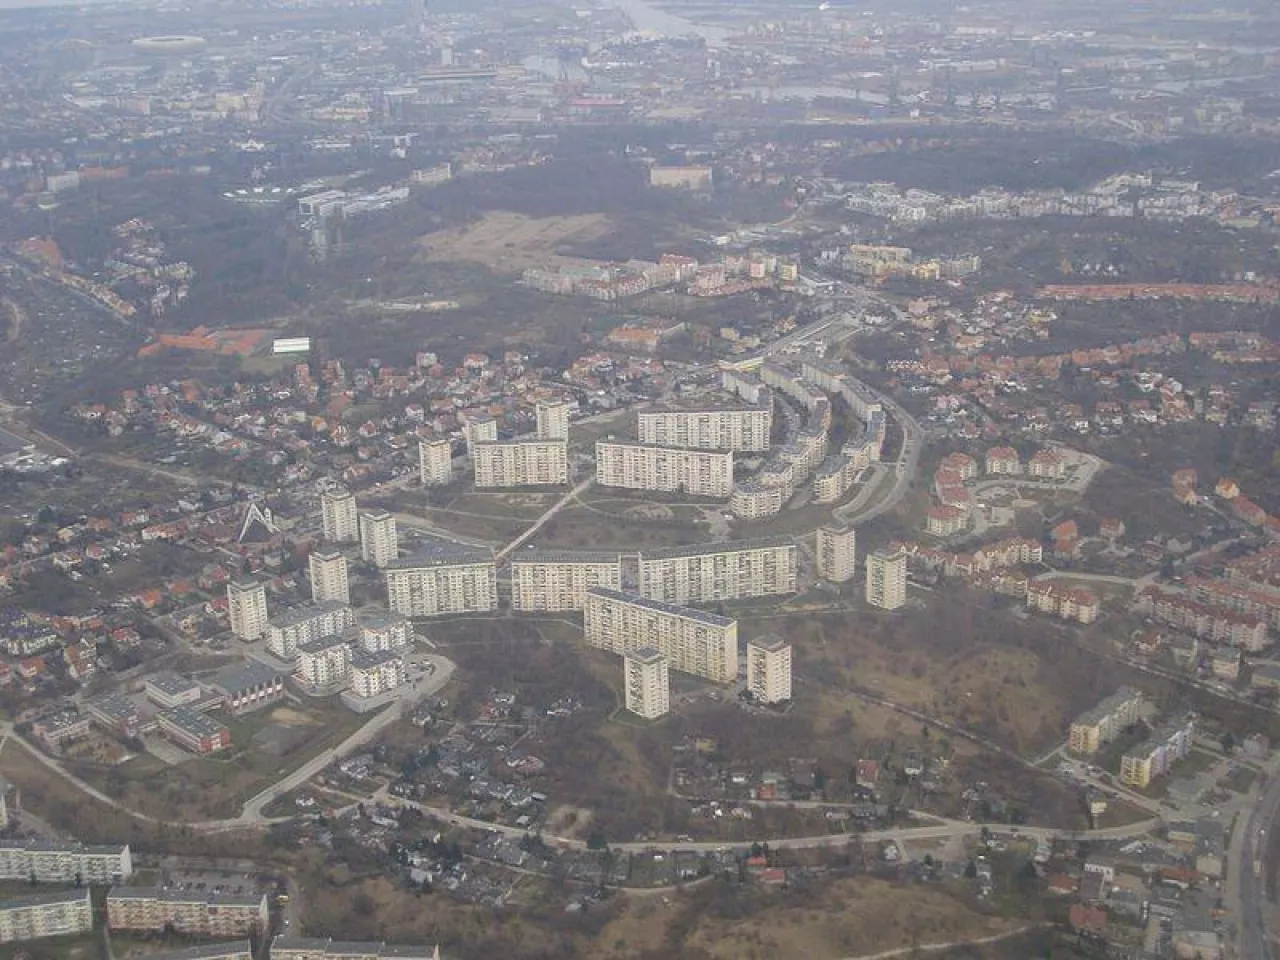 Dzielnica Suchanino w Gdańsku (fot. A. Otrębski/Wikimedia Commons, na lic. CC BY-SA 3.0)